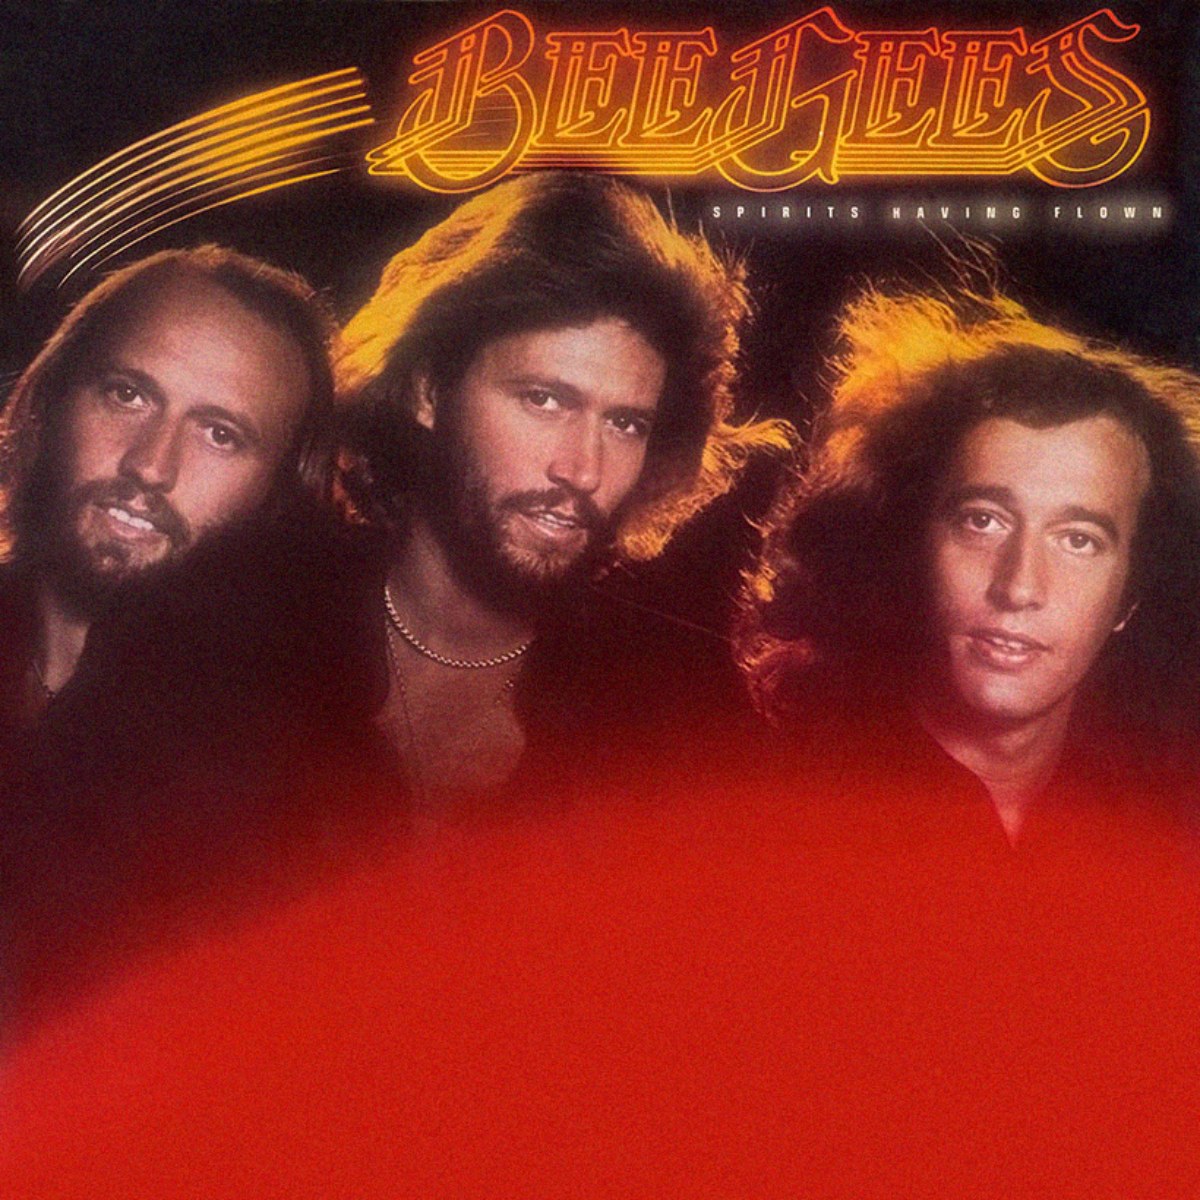 Bee Gees - "Spirits Having Flown" (1979)